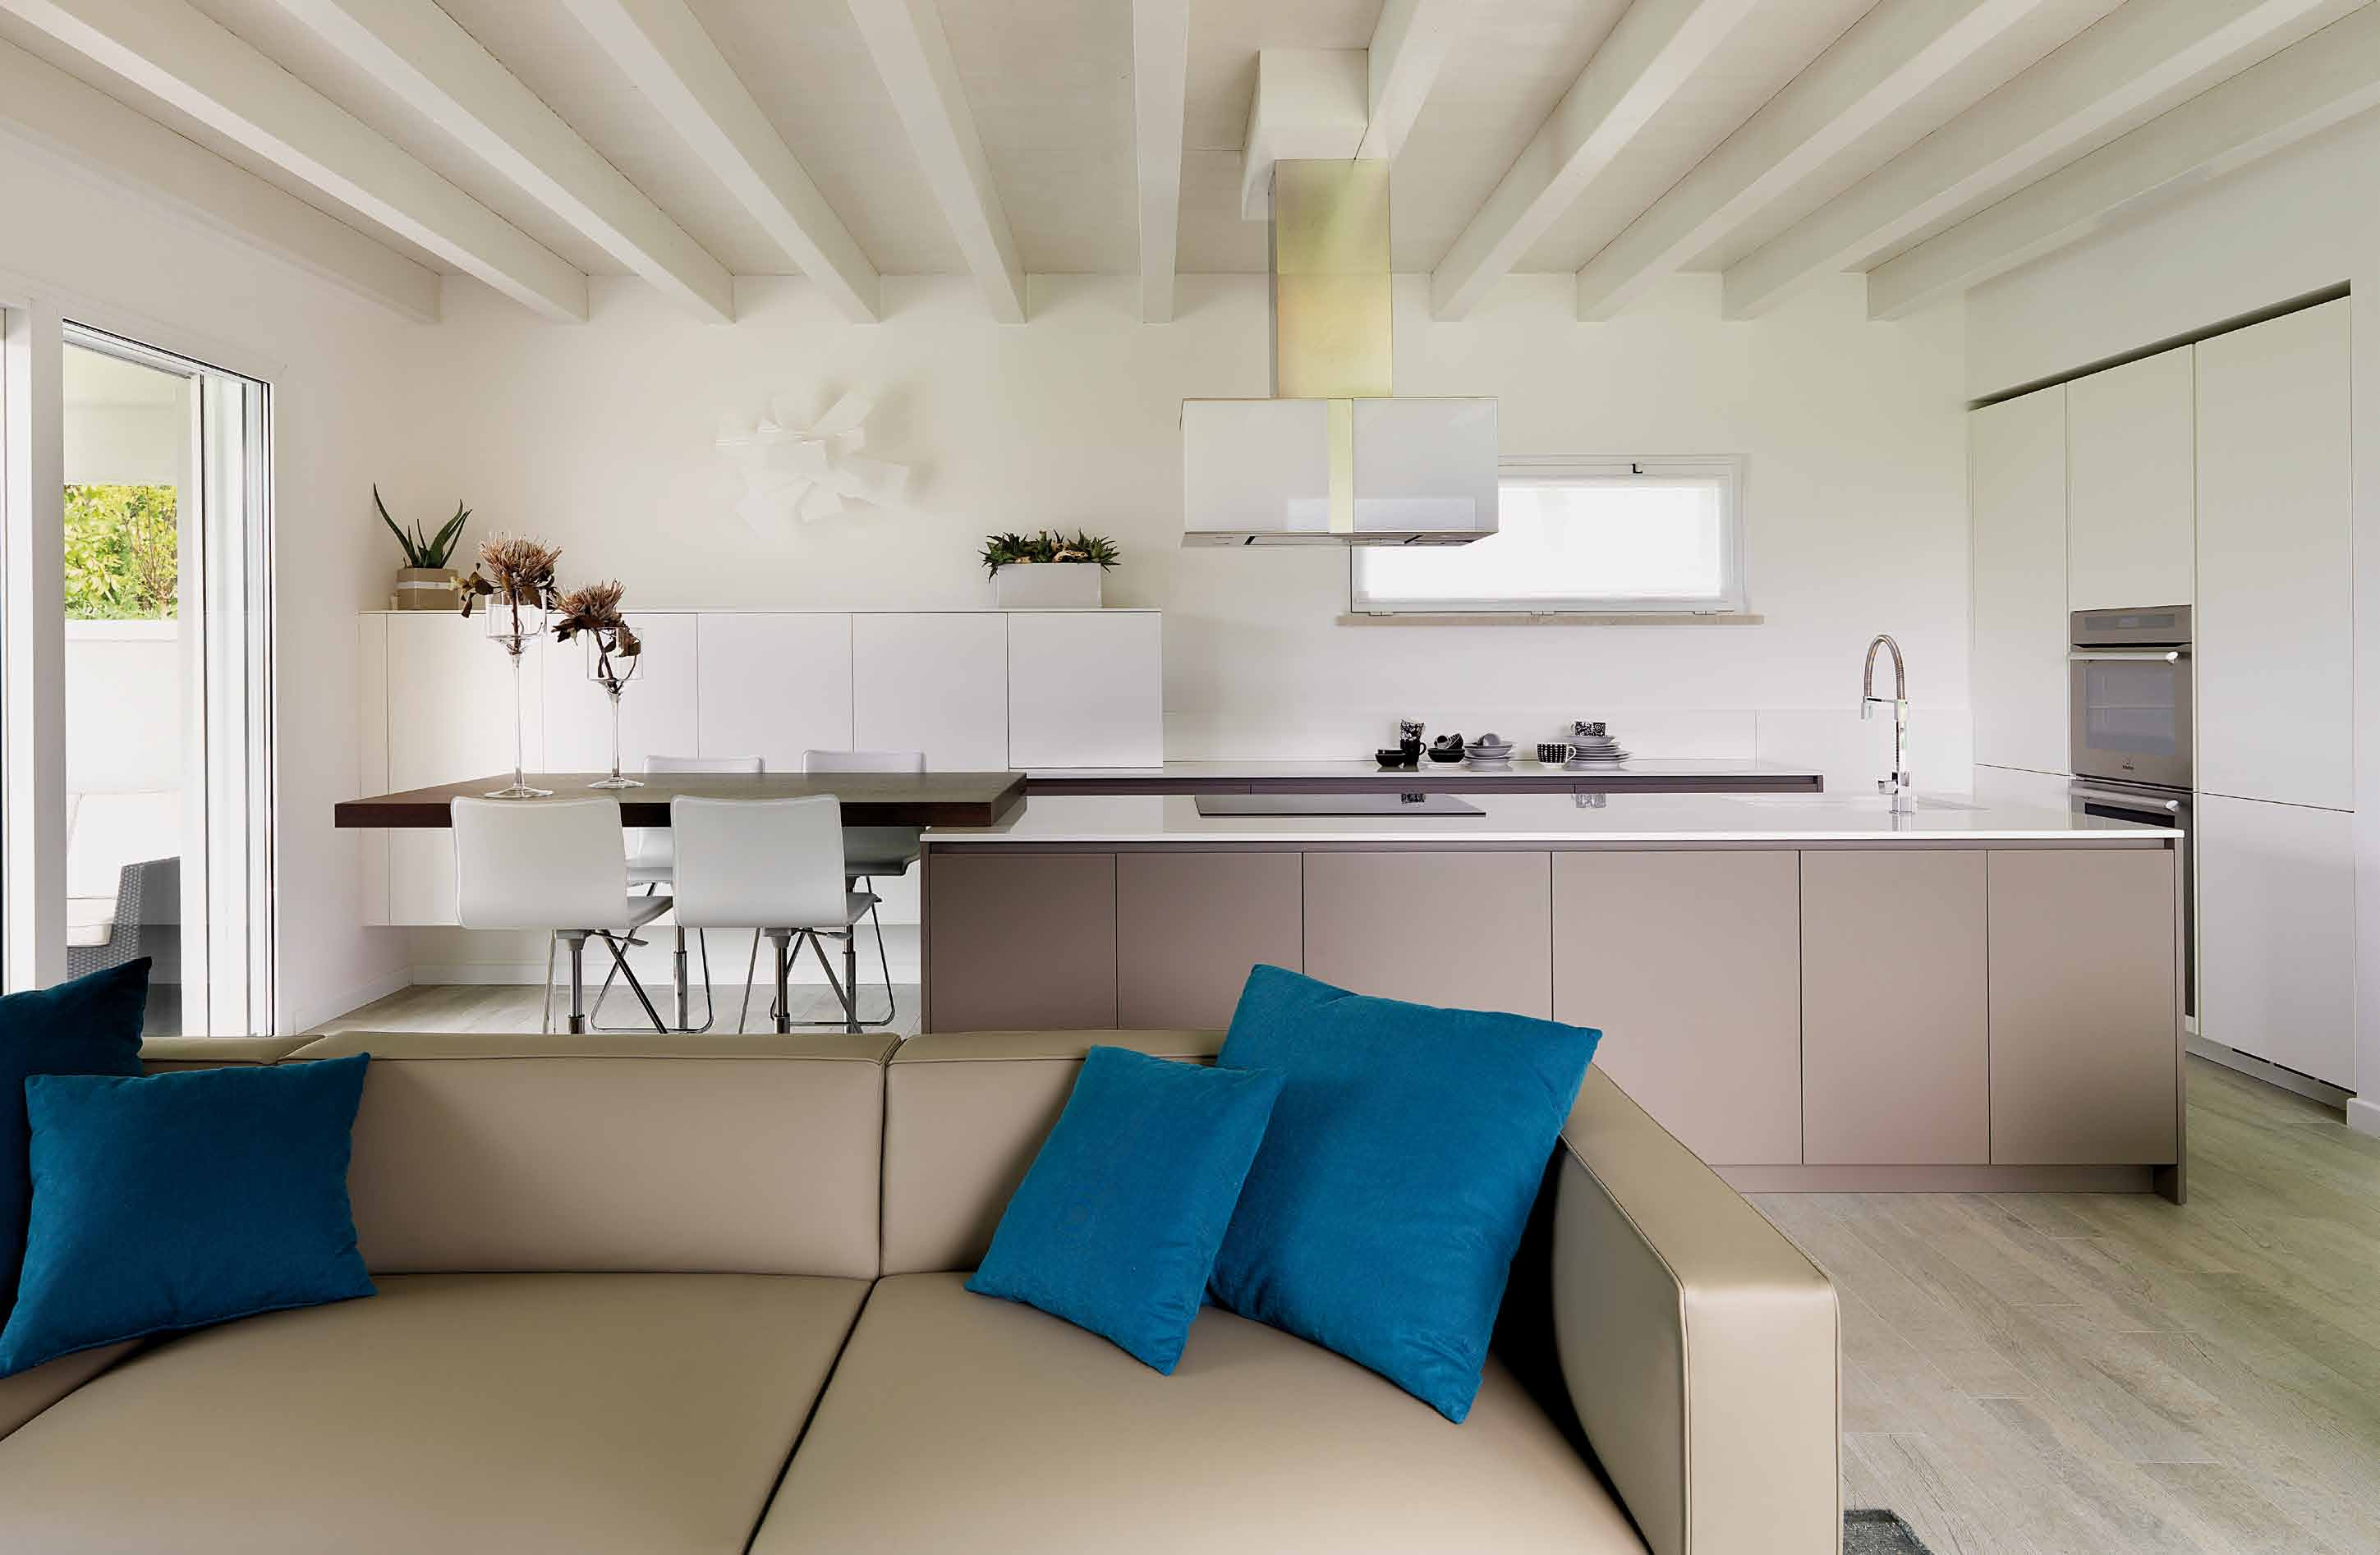 Organizzata e funzionale, la cucina laccata bianco opaco e tortora ha ampio sviluppo: lungo la parete, serie di mobili contenitori e area lavoro, con piano in Okite bianco assoluto.